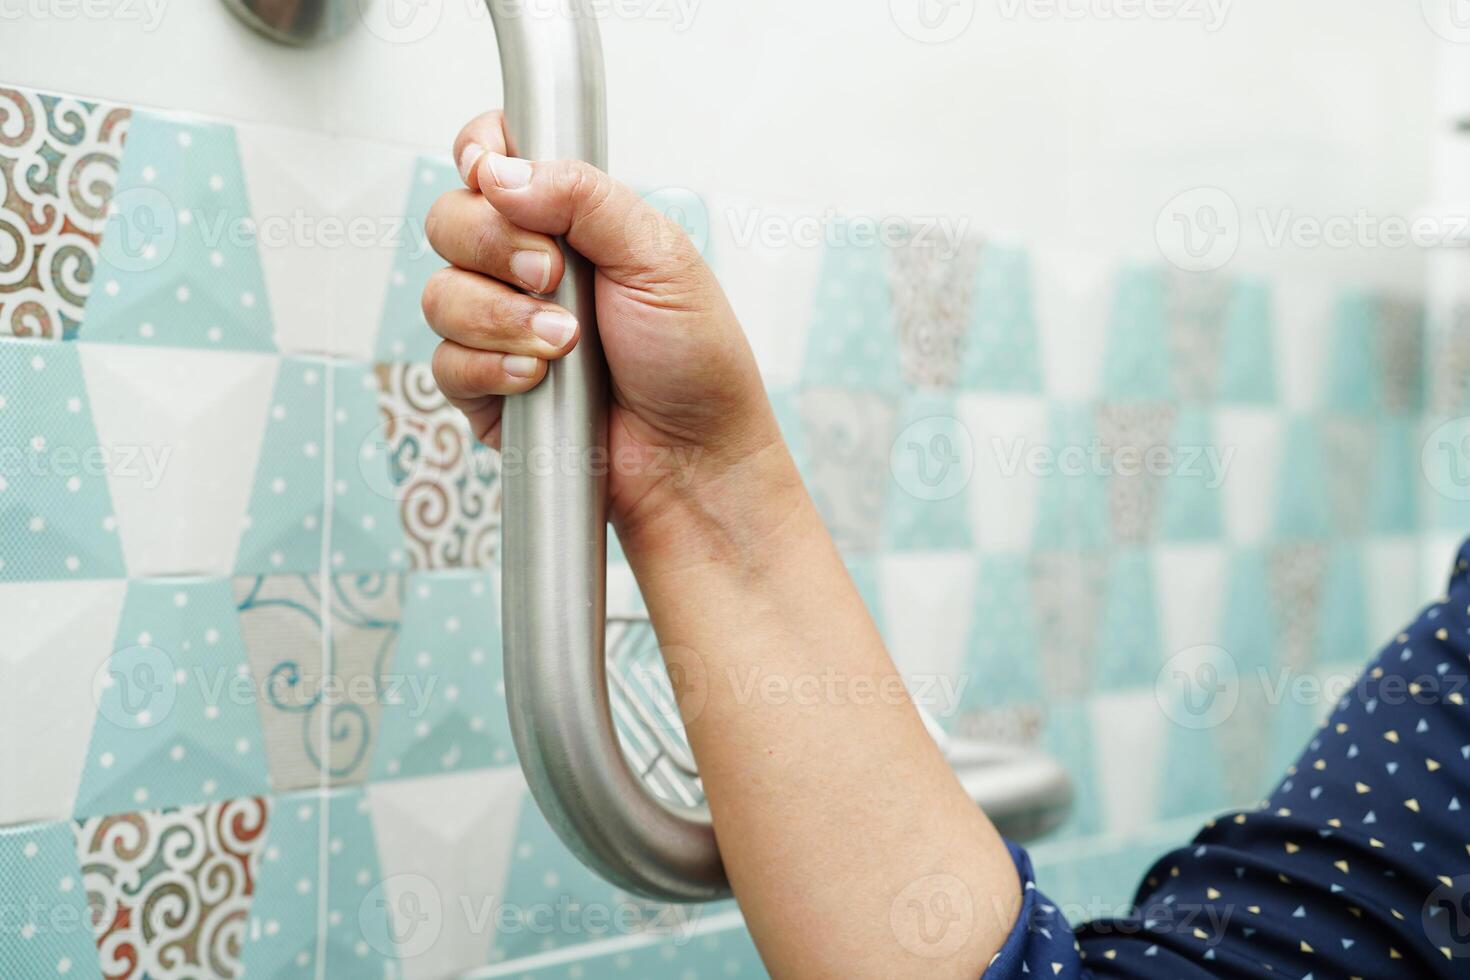 Aziatische vrouw patiënt gebruik toilet steunrail in badkamer, leuning veiligheid handgreep, beveiliging in verpleegziekenhuis. foto